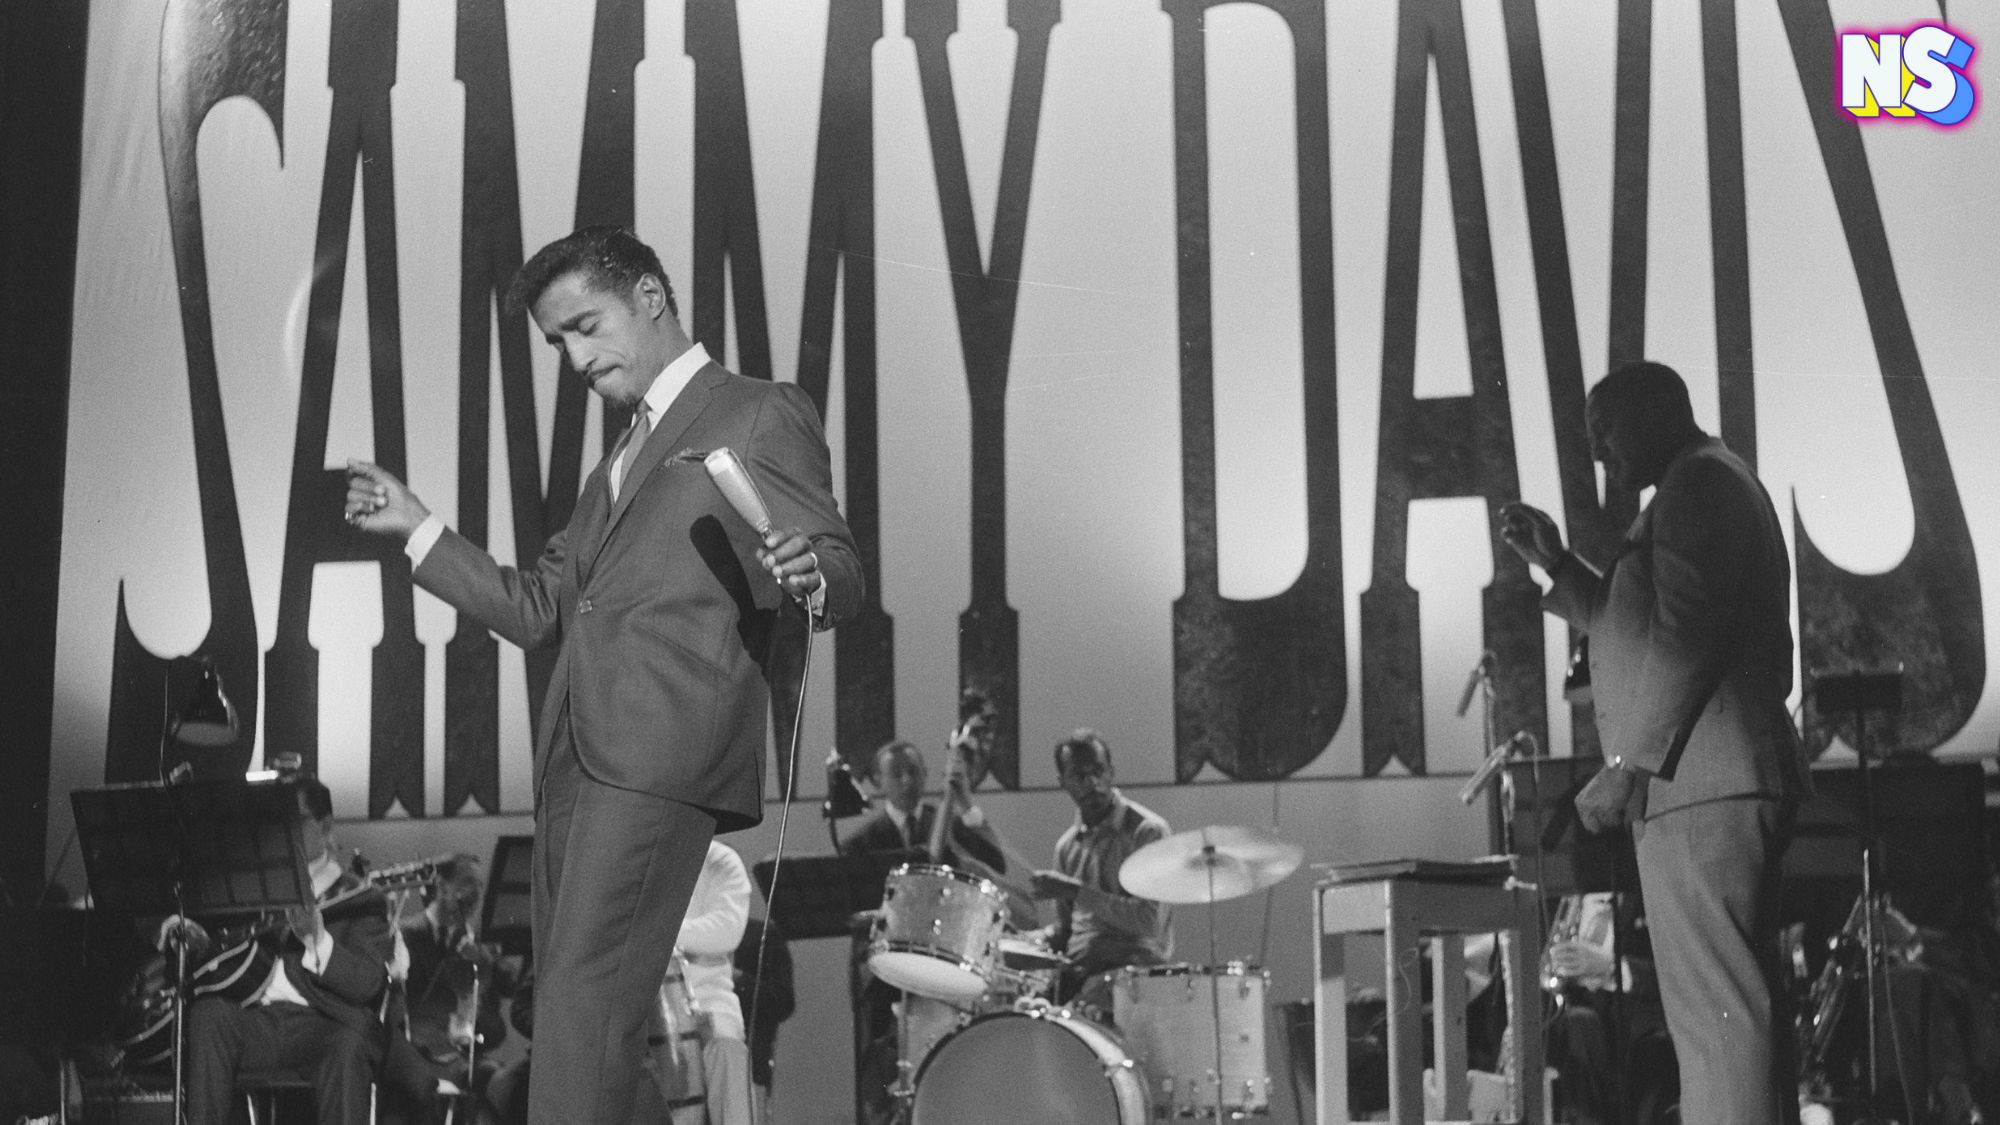 Sammy Davis Jr singing in the Carre, Bestanddeelnr theater 916-2038.jpg | Sammy Davis Jr tijdens optreden in theater Carre, Bestanddeelnr 916-2038